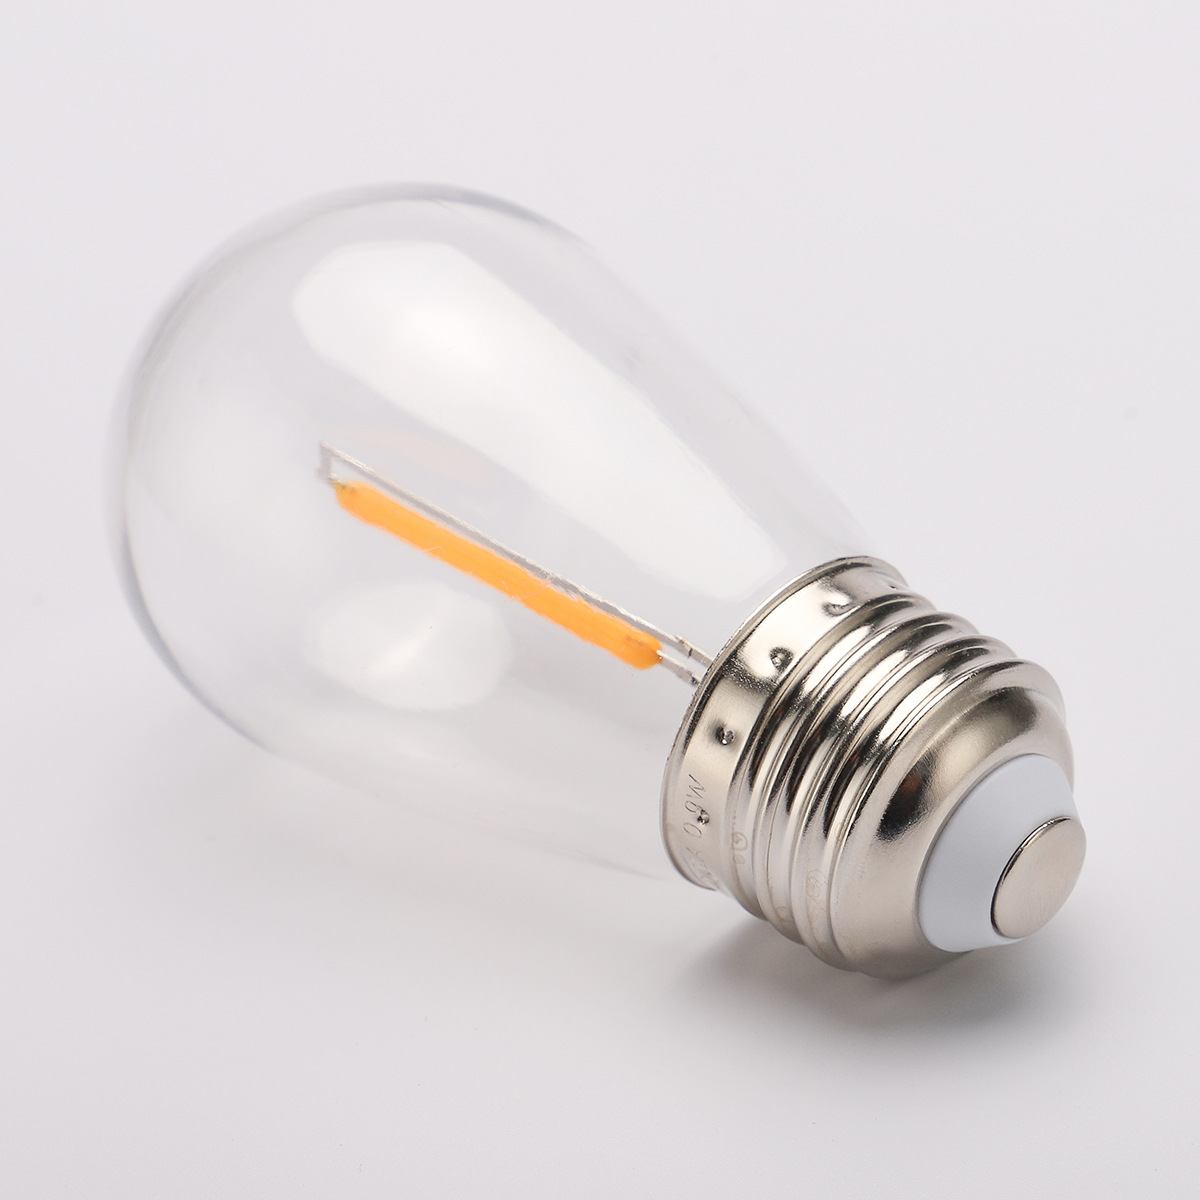 E27 dimbar LED lampa 3V 0,8W 2200K för bland annat solcellsbelysning